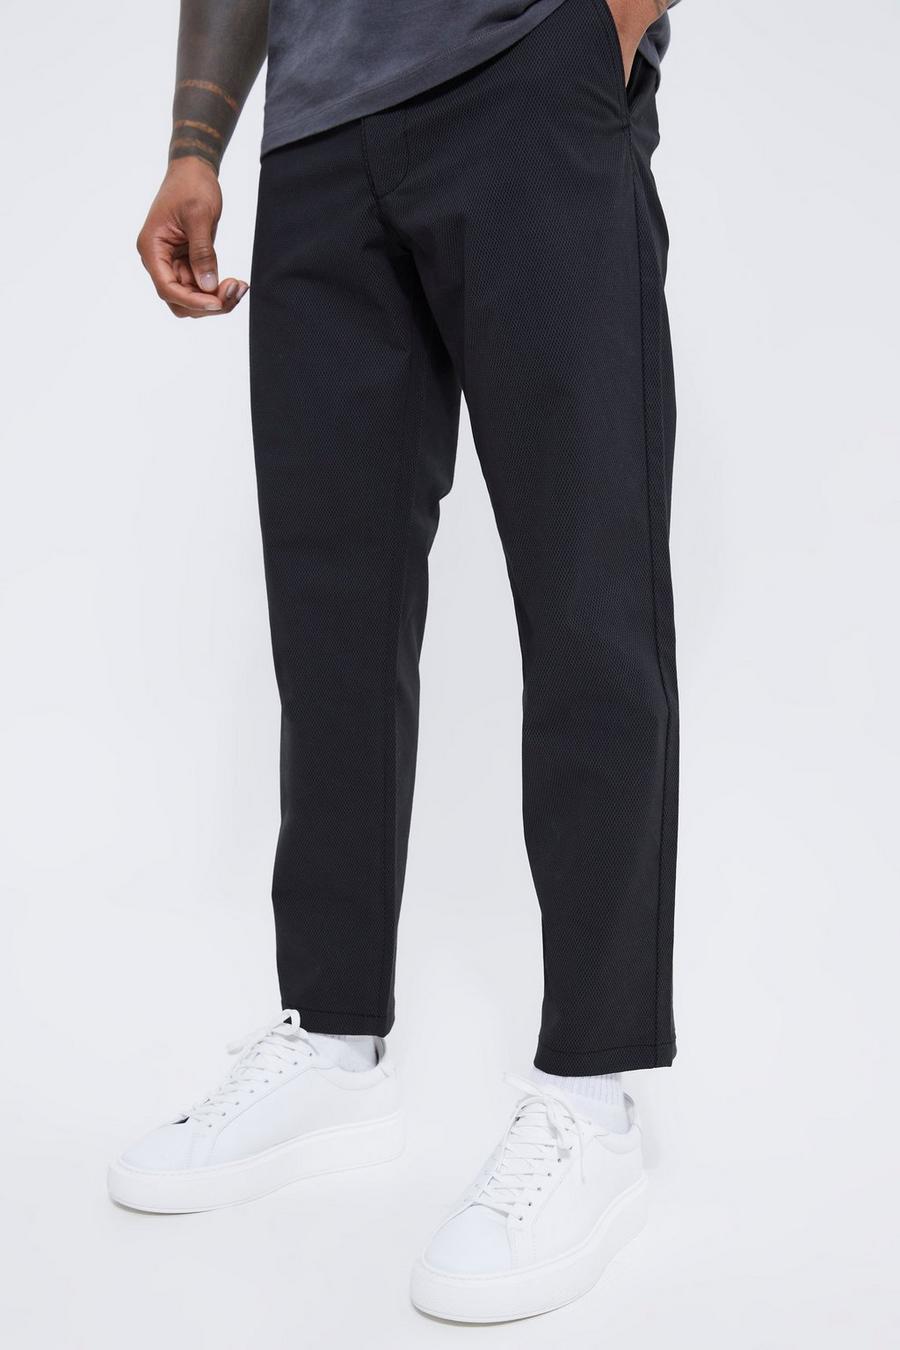 Pantalón chino texturizado crop ajustado con cintura fija, Black nero